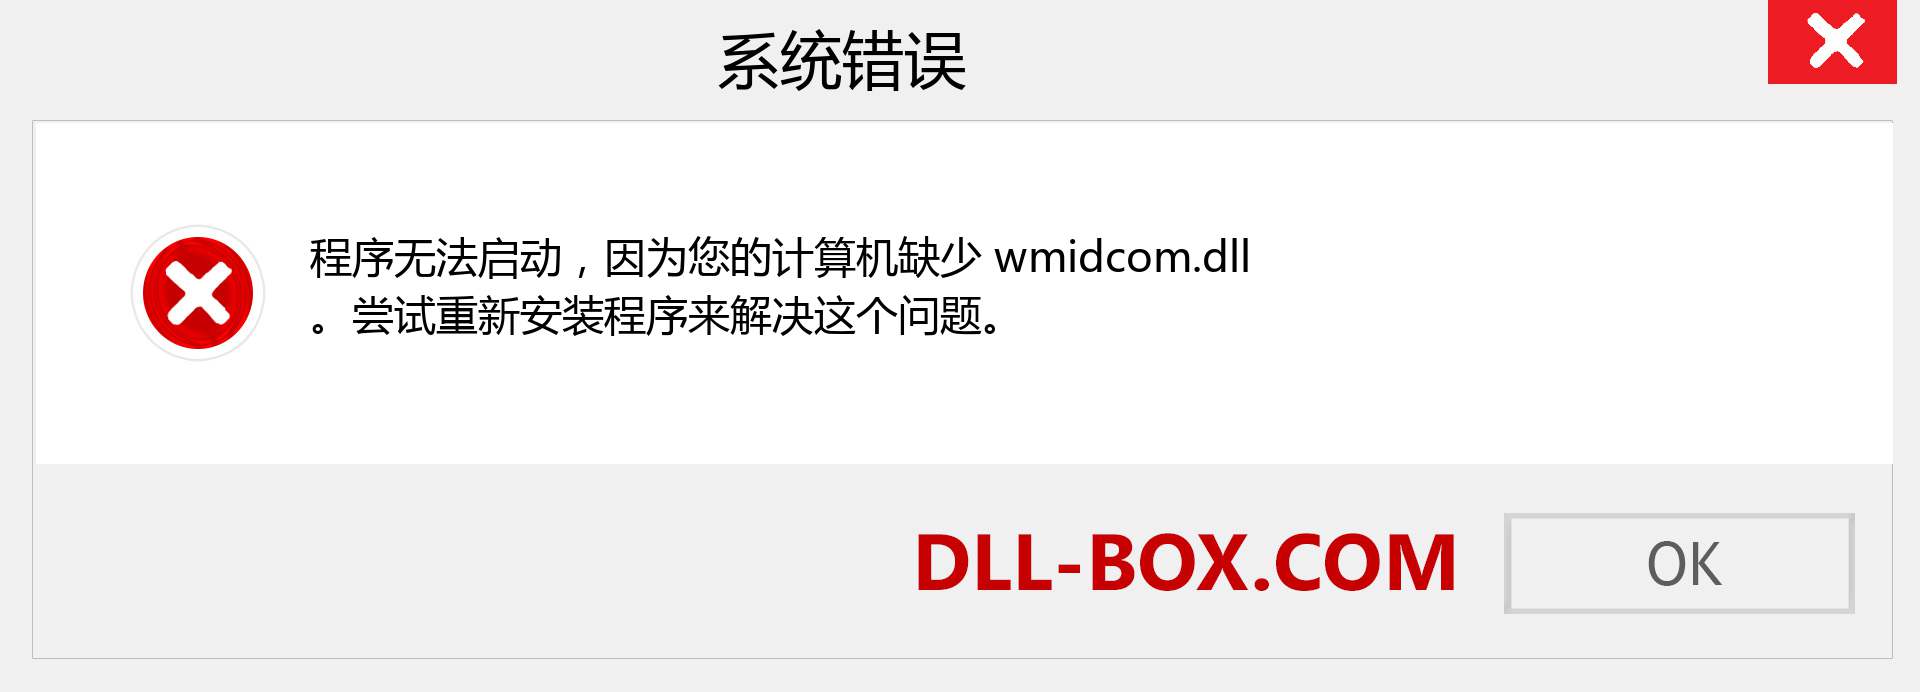 wmidcom.dll 文件丢失？。 适用于 Windows 7、8、10 的下载 - 修复 Windows、照片、图像上的 wmidcom dll 丢失错误